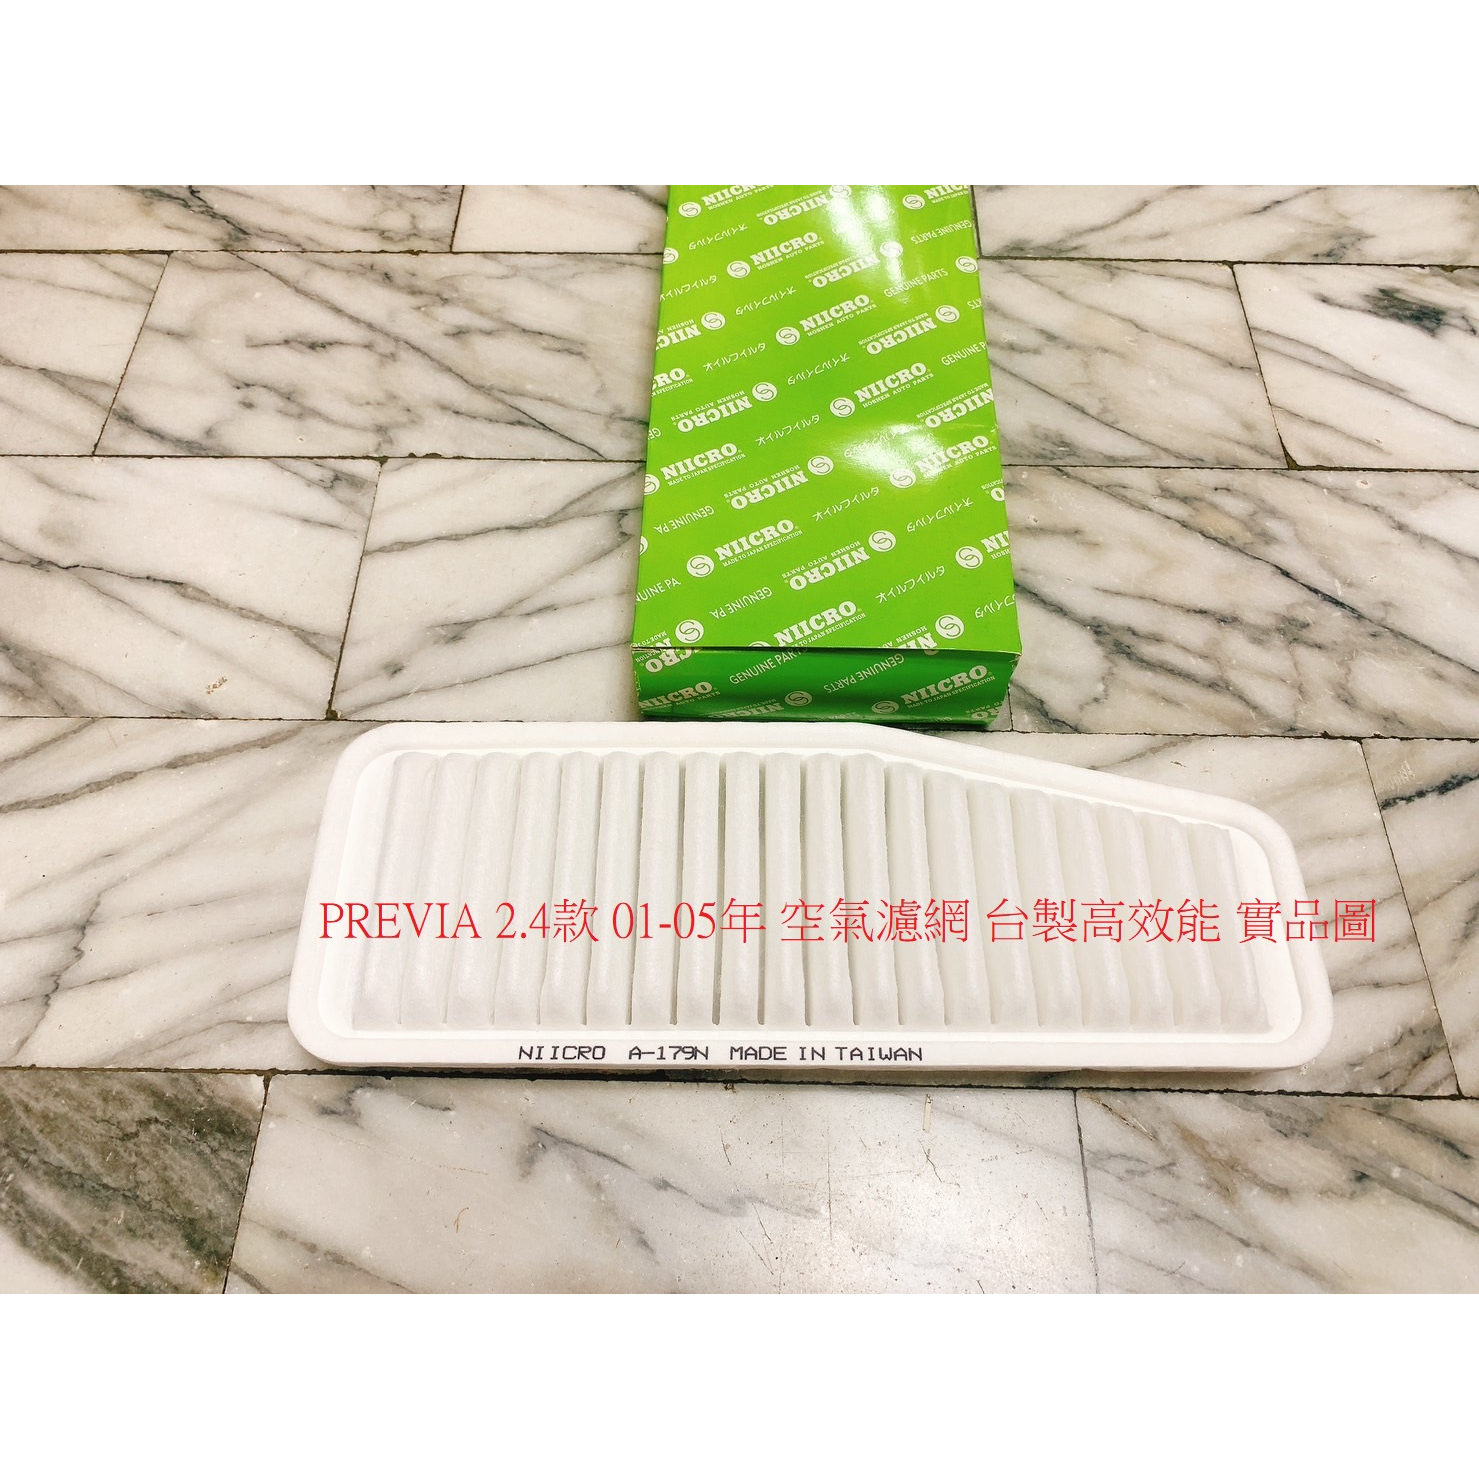 豐田 PREVIA 2.4 01-05 空氣濾網 空氣芯 引擎濾網 空氣濾清器 進氣濾網 冷氣濾網 冷氣芯 正廠件